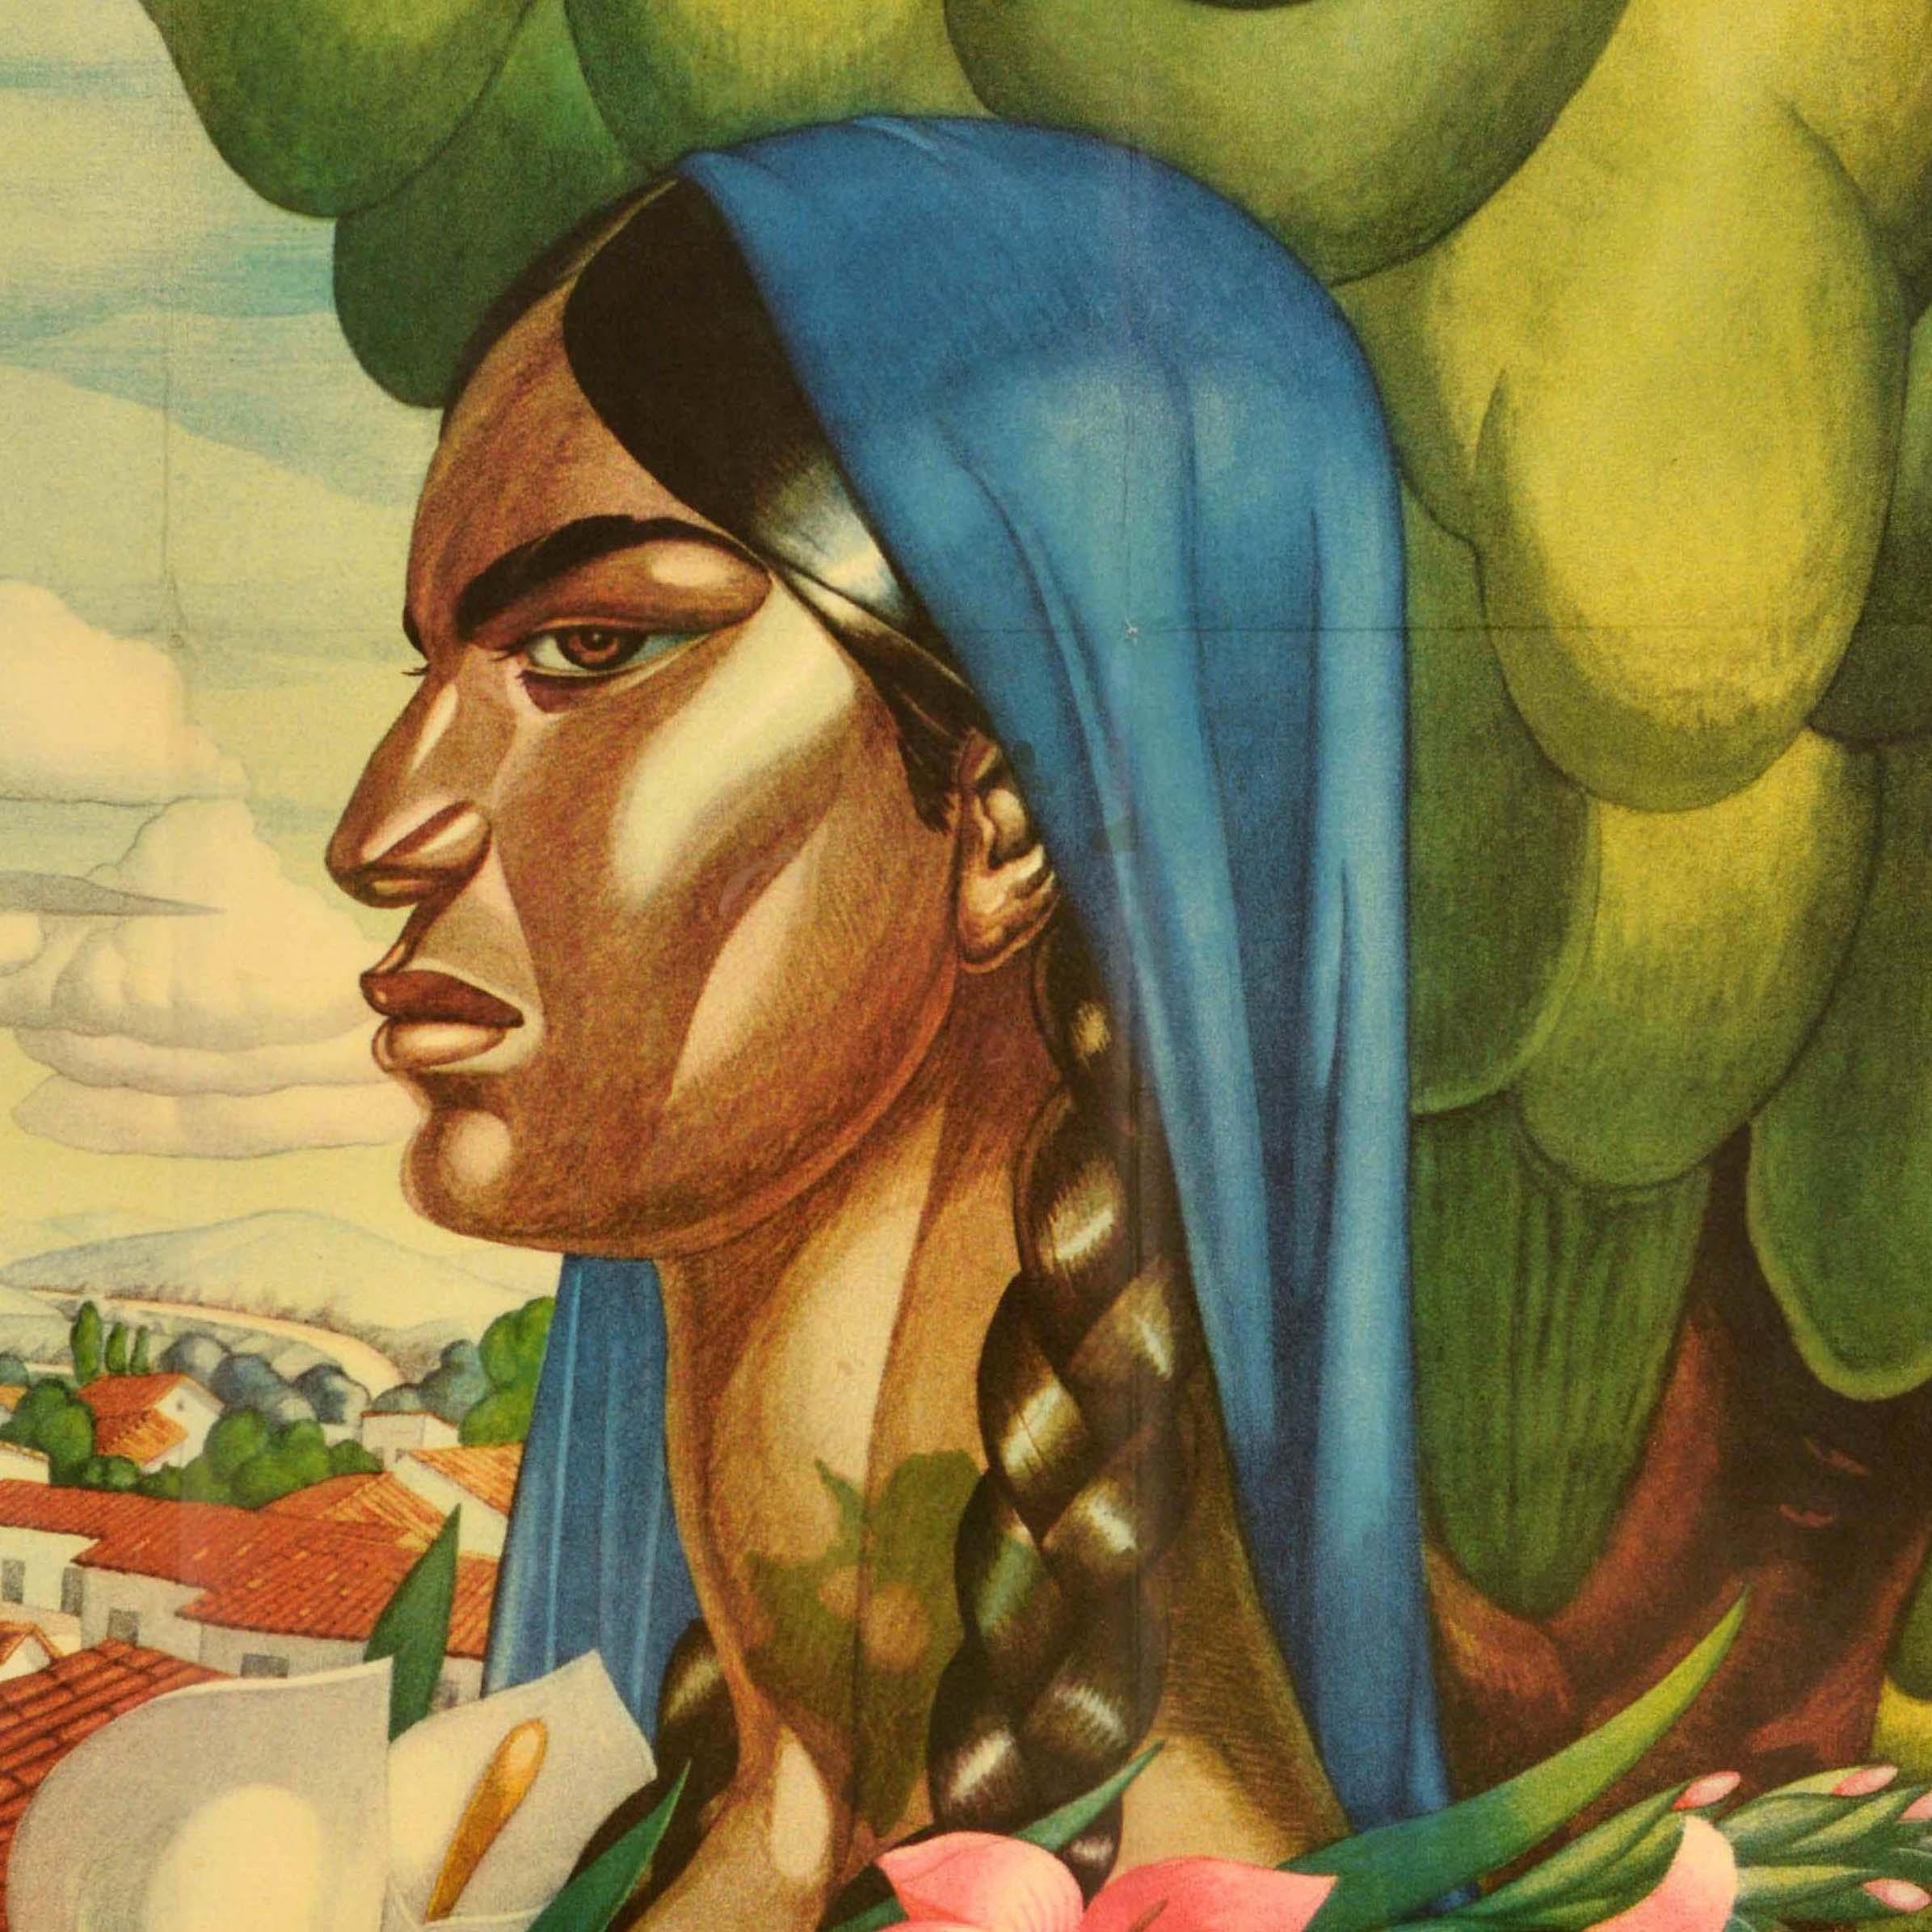 Affiche de voyage originale pour le Mexique, réalisée par l'artiste mexicain Alfonso X Pena (1903-1964), représentant une dame tenant des fleurs d'iris et de lys jaunes, roses et blanches, avec un arbre et une vue sur des toits menant à des collines